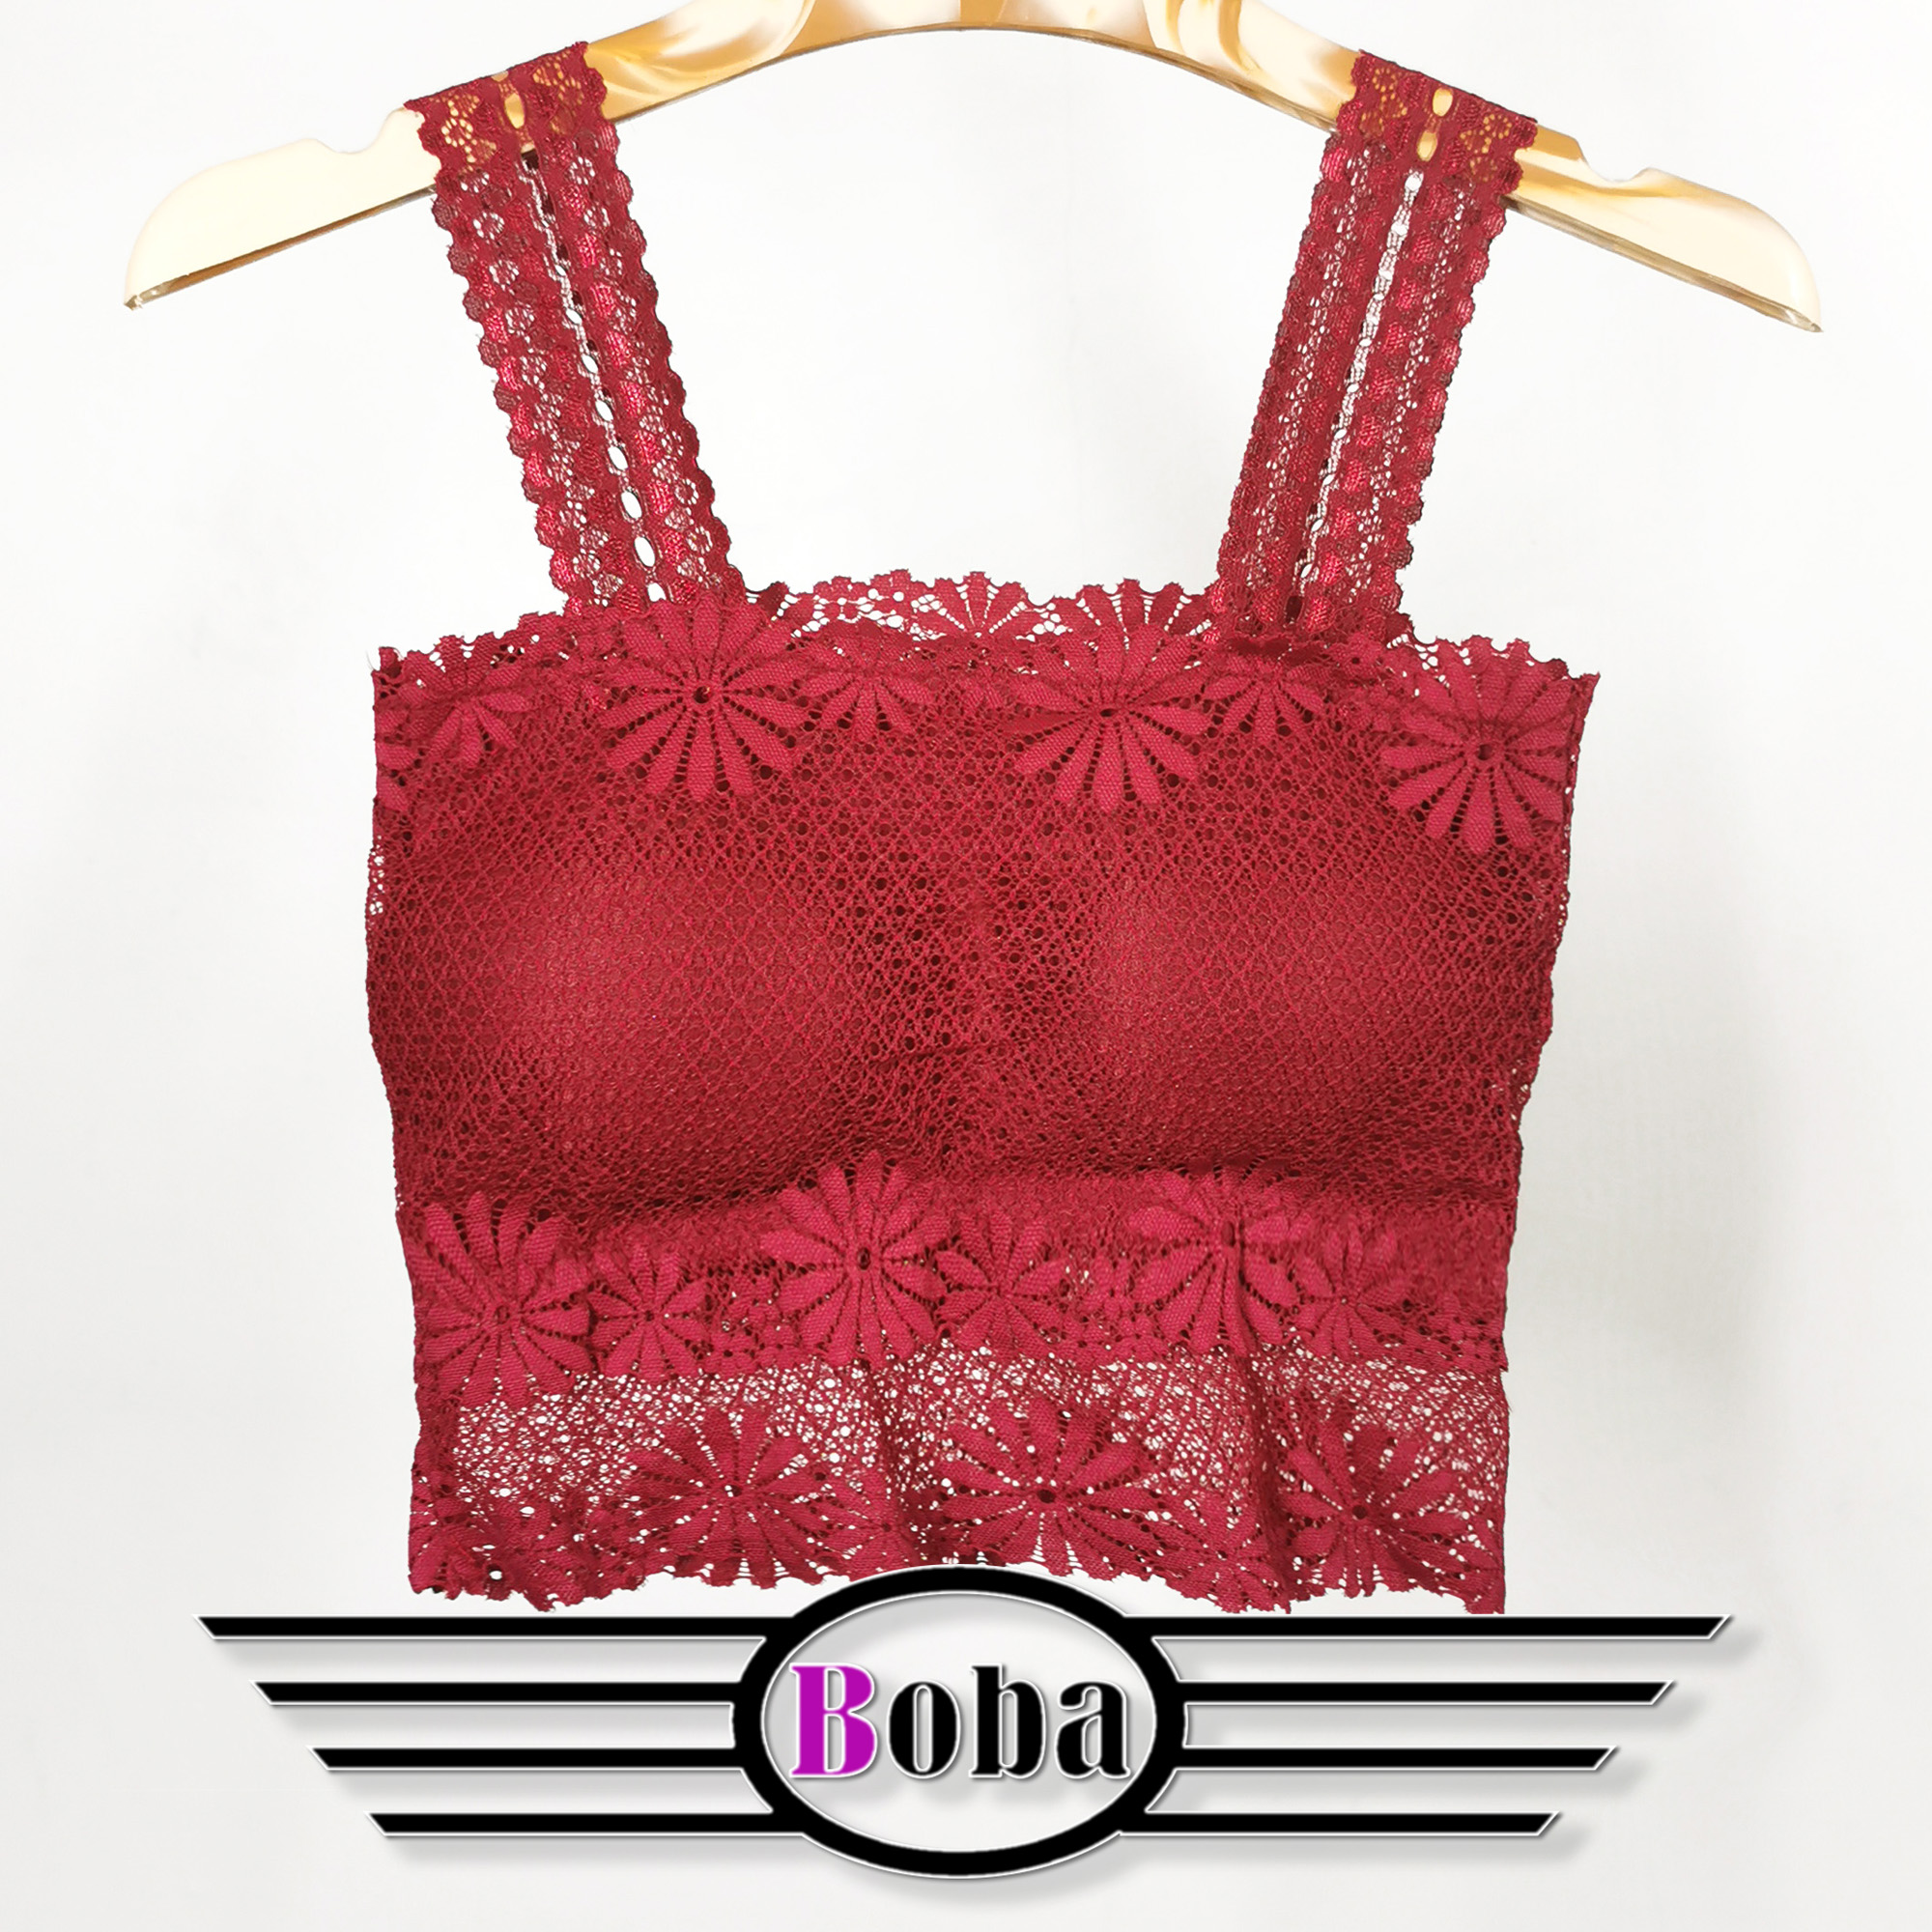 Boba-1882-บราสายเดี่ยว เสื้อกล้าม สายเดี่ยว บราสายเดี่ยวแบบสวม